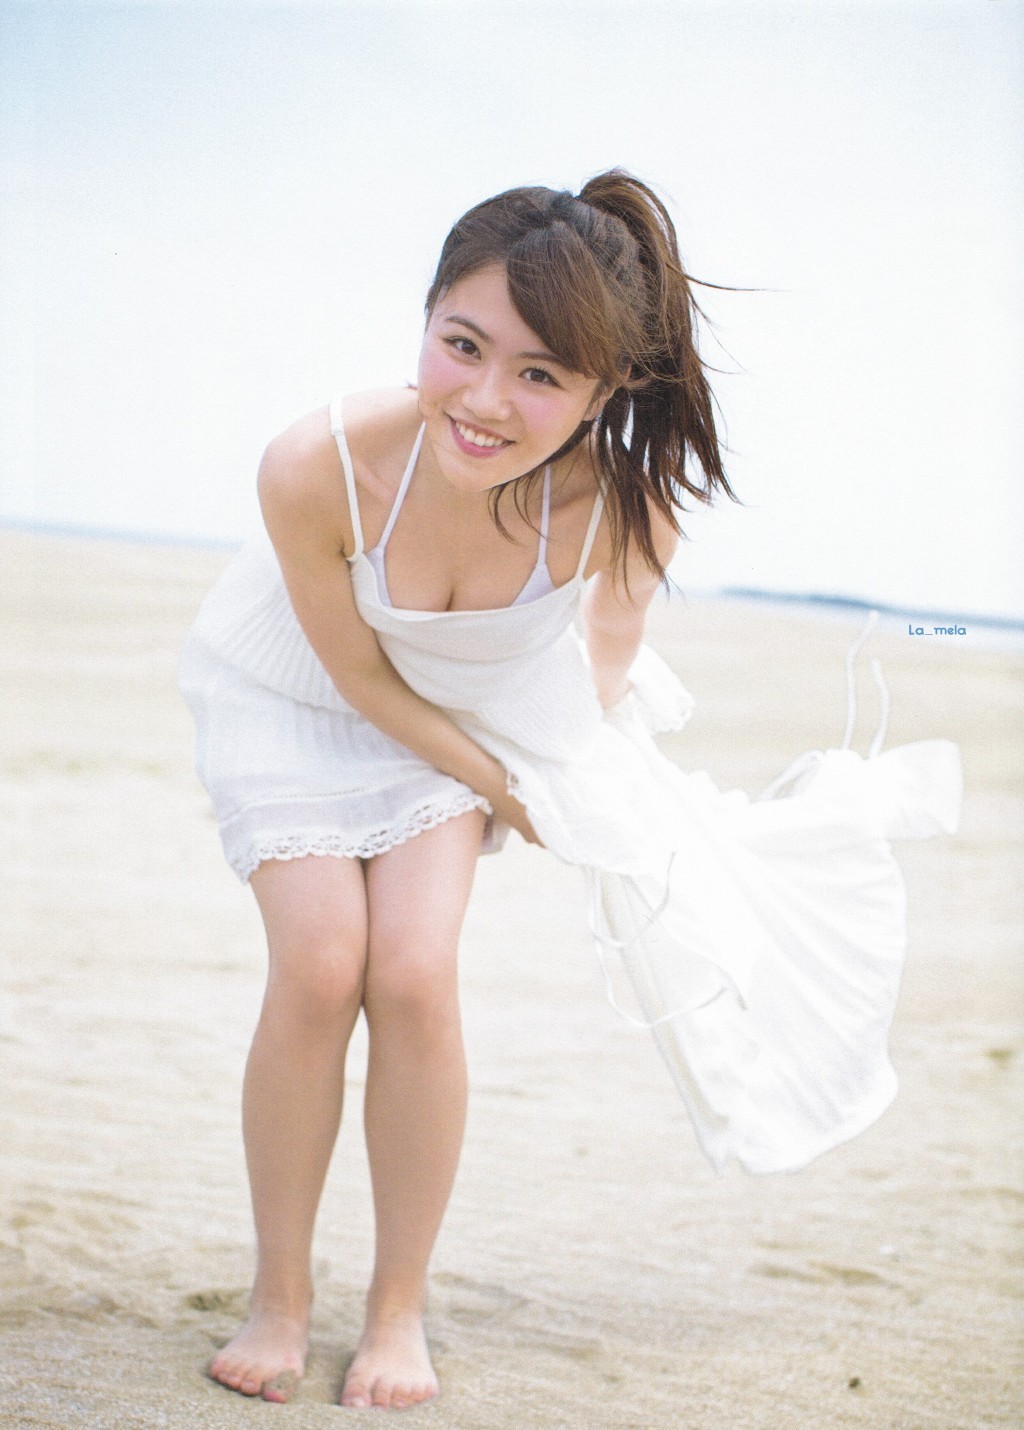 Komiyama Haruka AKB48 on BLT Graph Magazine HD